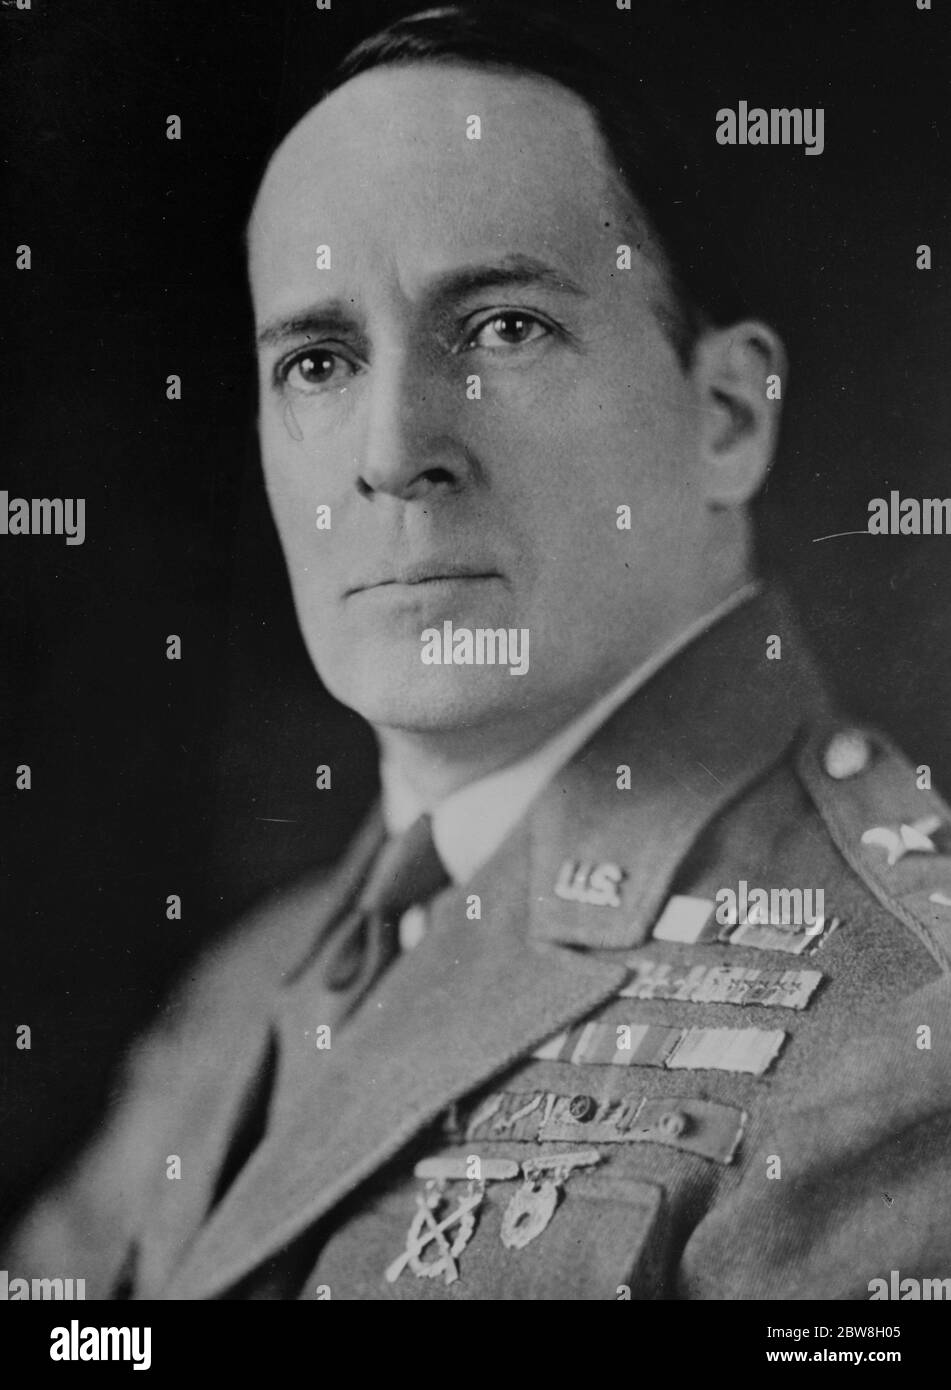 £61,000,000 für größere US Army . General Douglas McArthur, der für die sofortige Bereitstellung empfiehlt ein Programm der modernen Waffen und Ausrüstung durch die Kriegsabteilung. 27. November 1933 Stockfoto